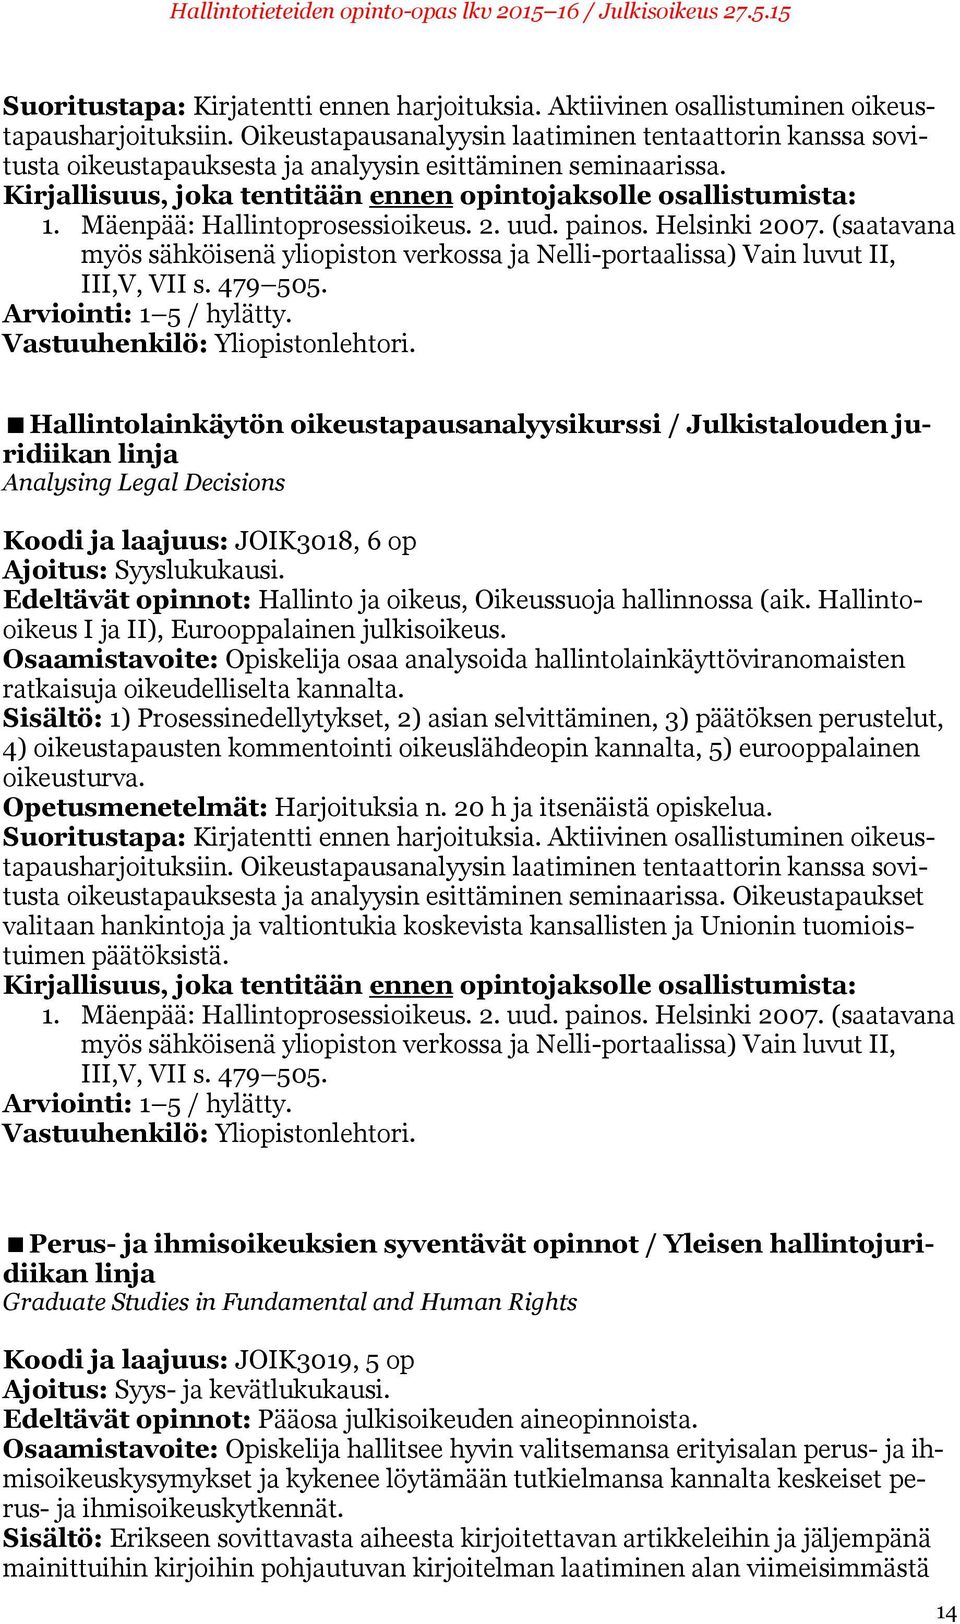 Mäenpää: Hallintoprosessioikeus. 2. uud. painos. Helsinki 2007. (saatavana myös sähköisenä yliopiston verkossa ja Nelli-portaalissa) Vain luvut II, III,V, VII s. 479 505.